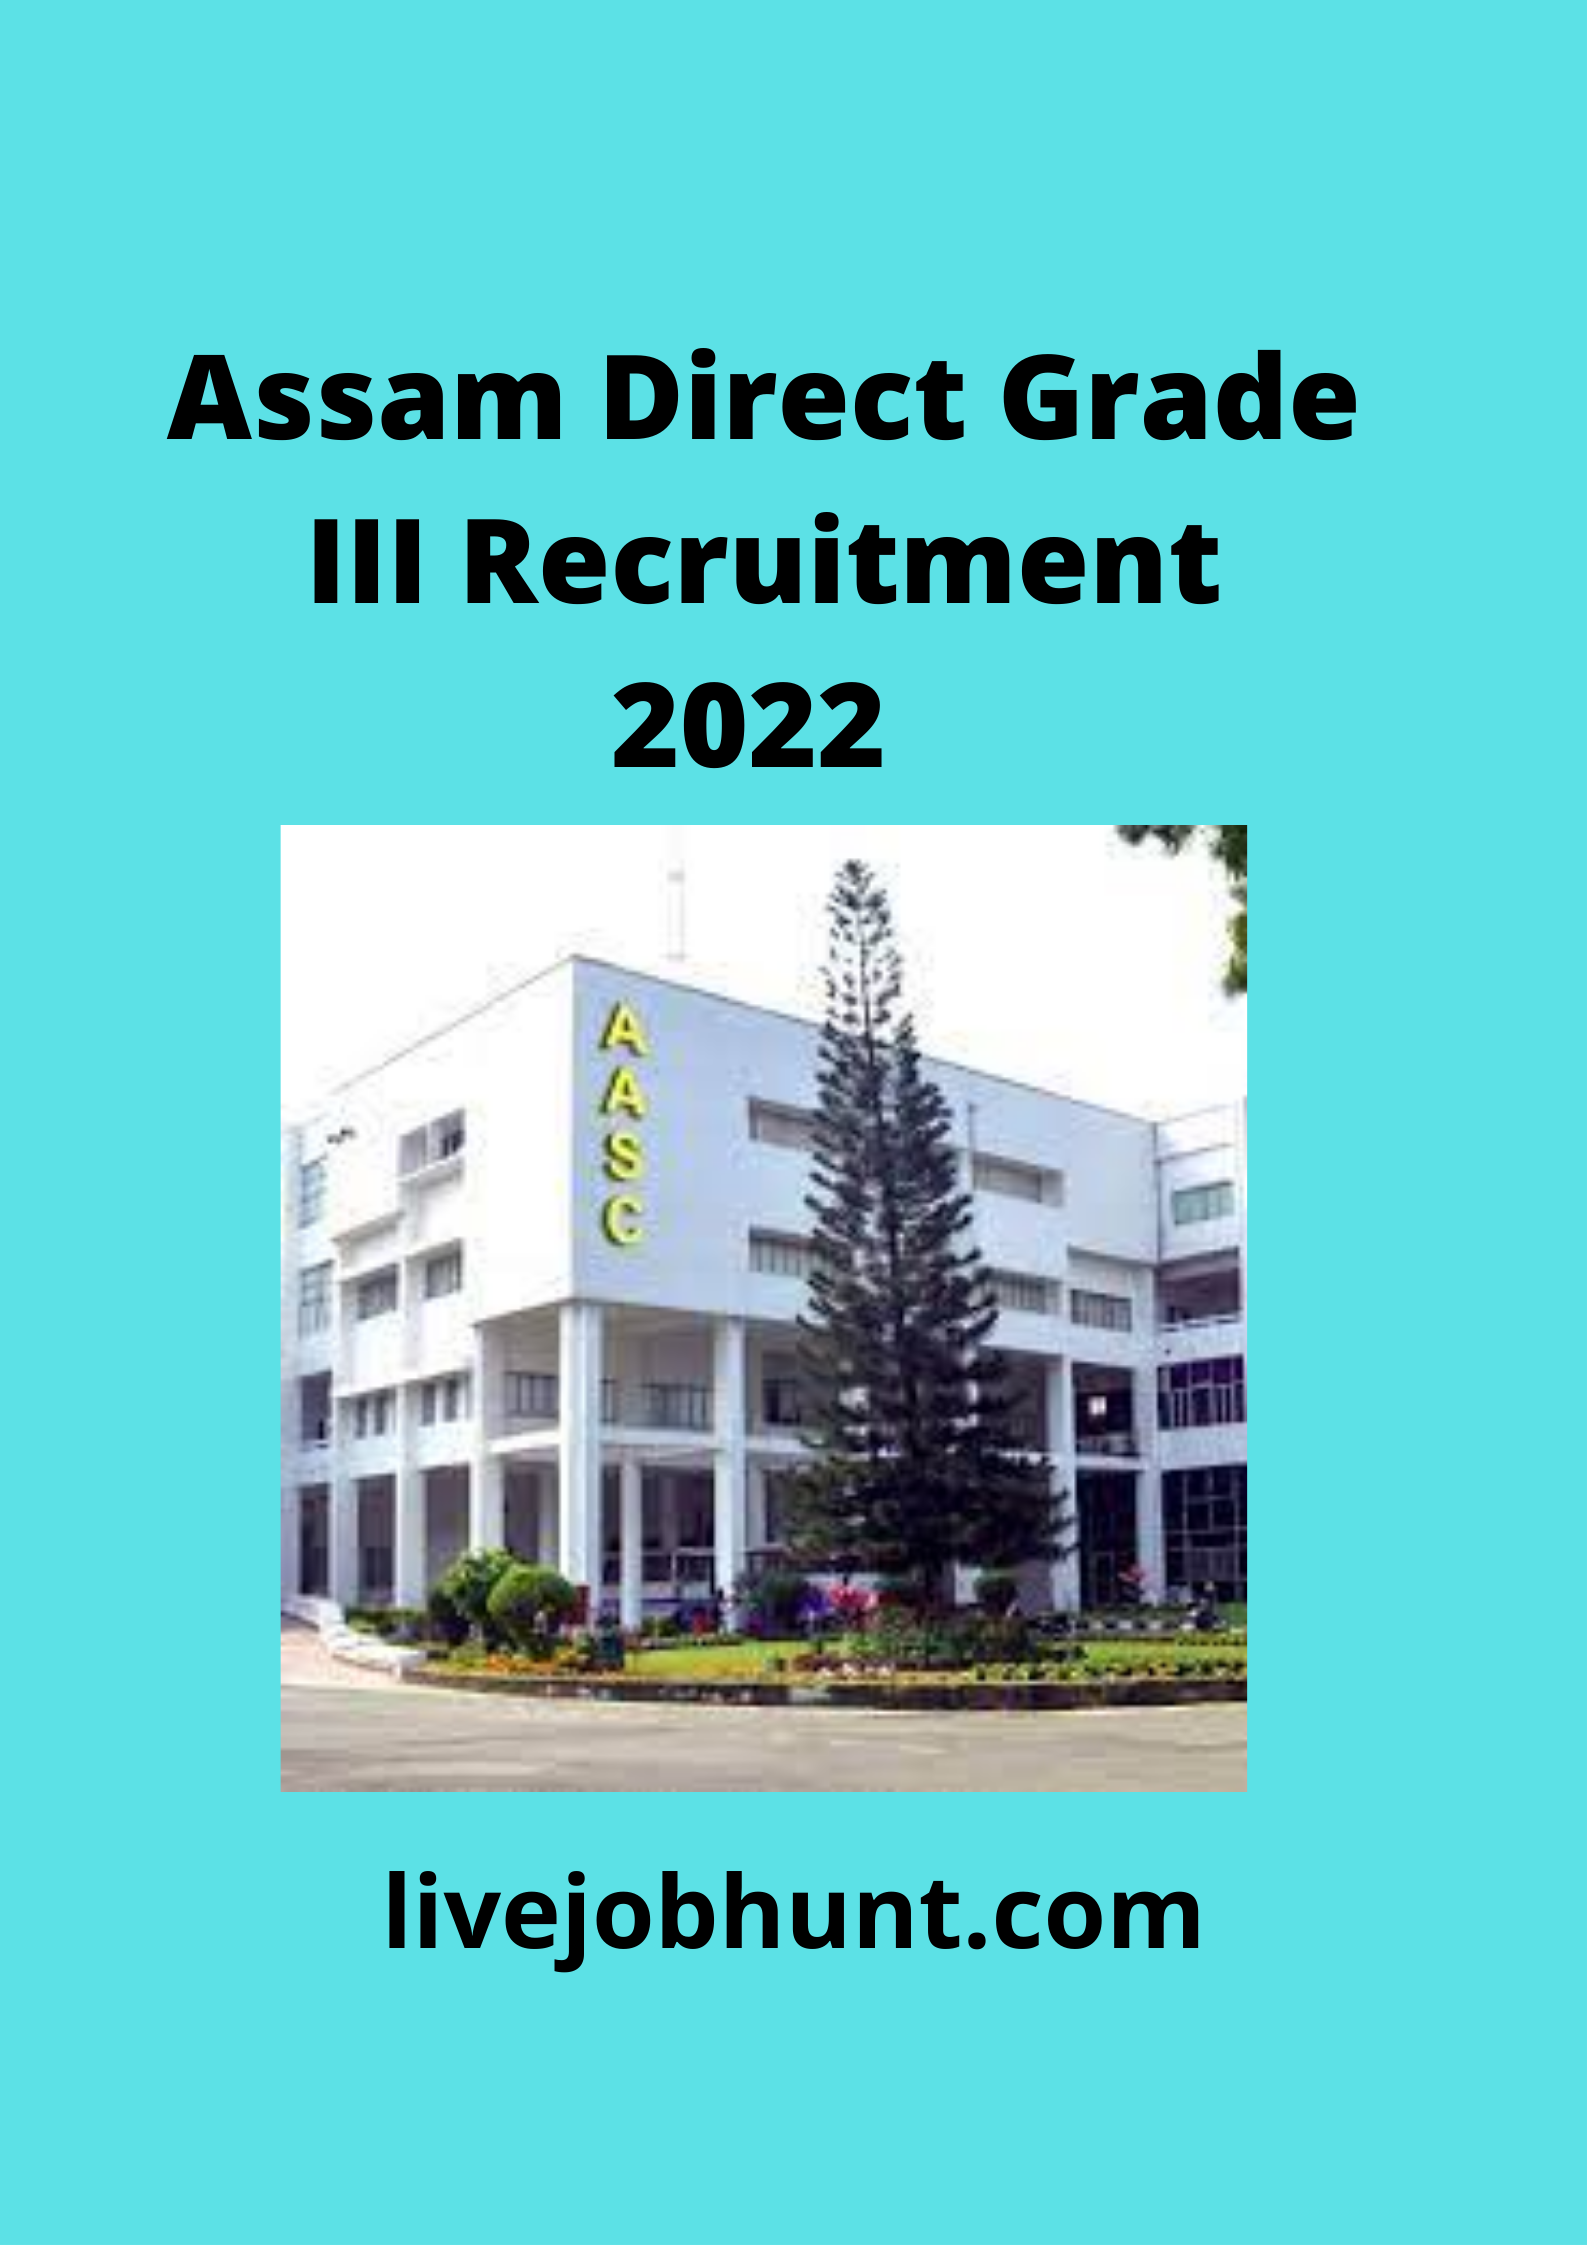 Assam Direct Grade III Recruitment 2022